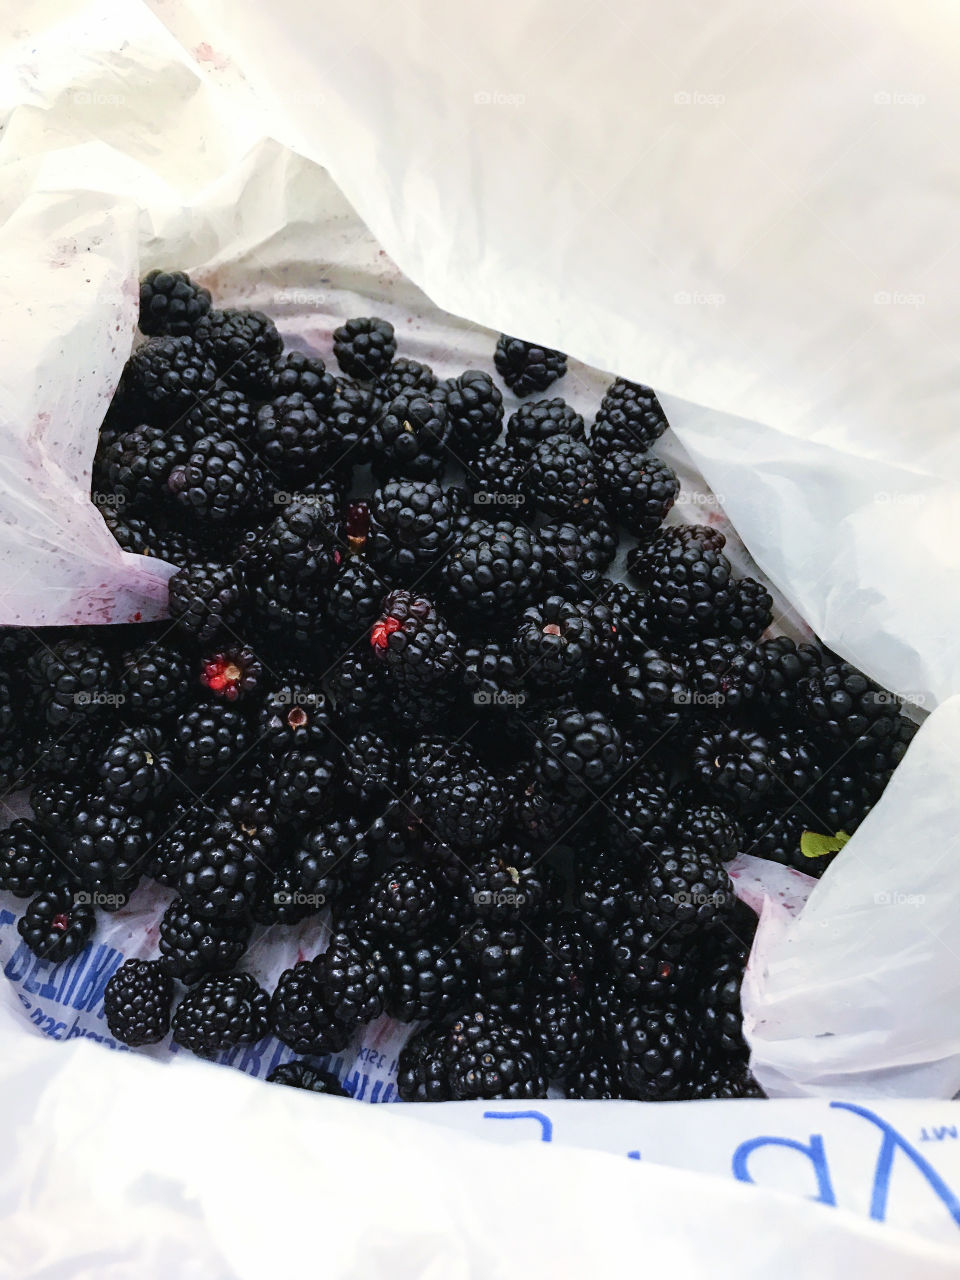 Blackberries freshly picked 